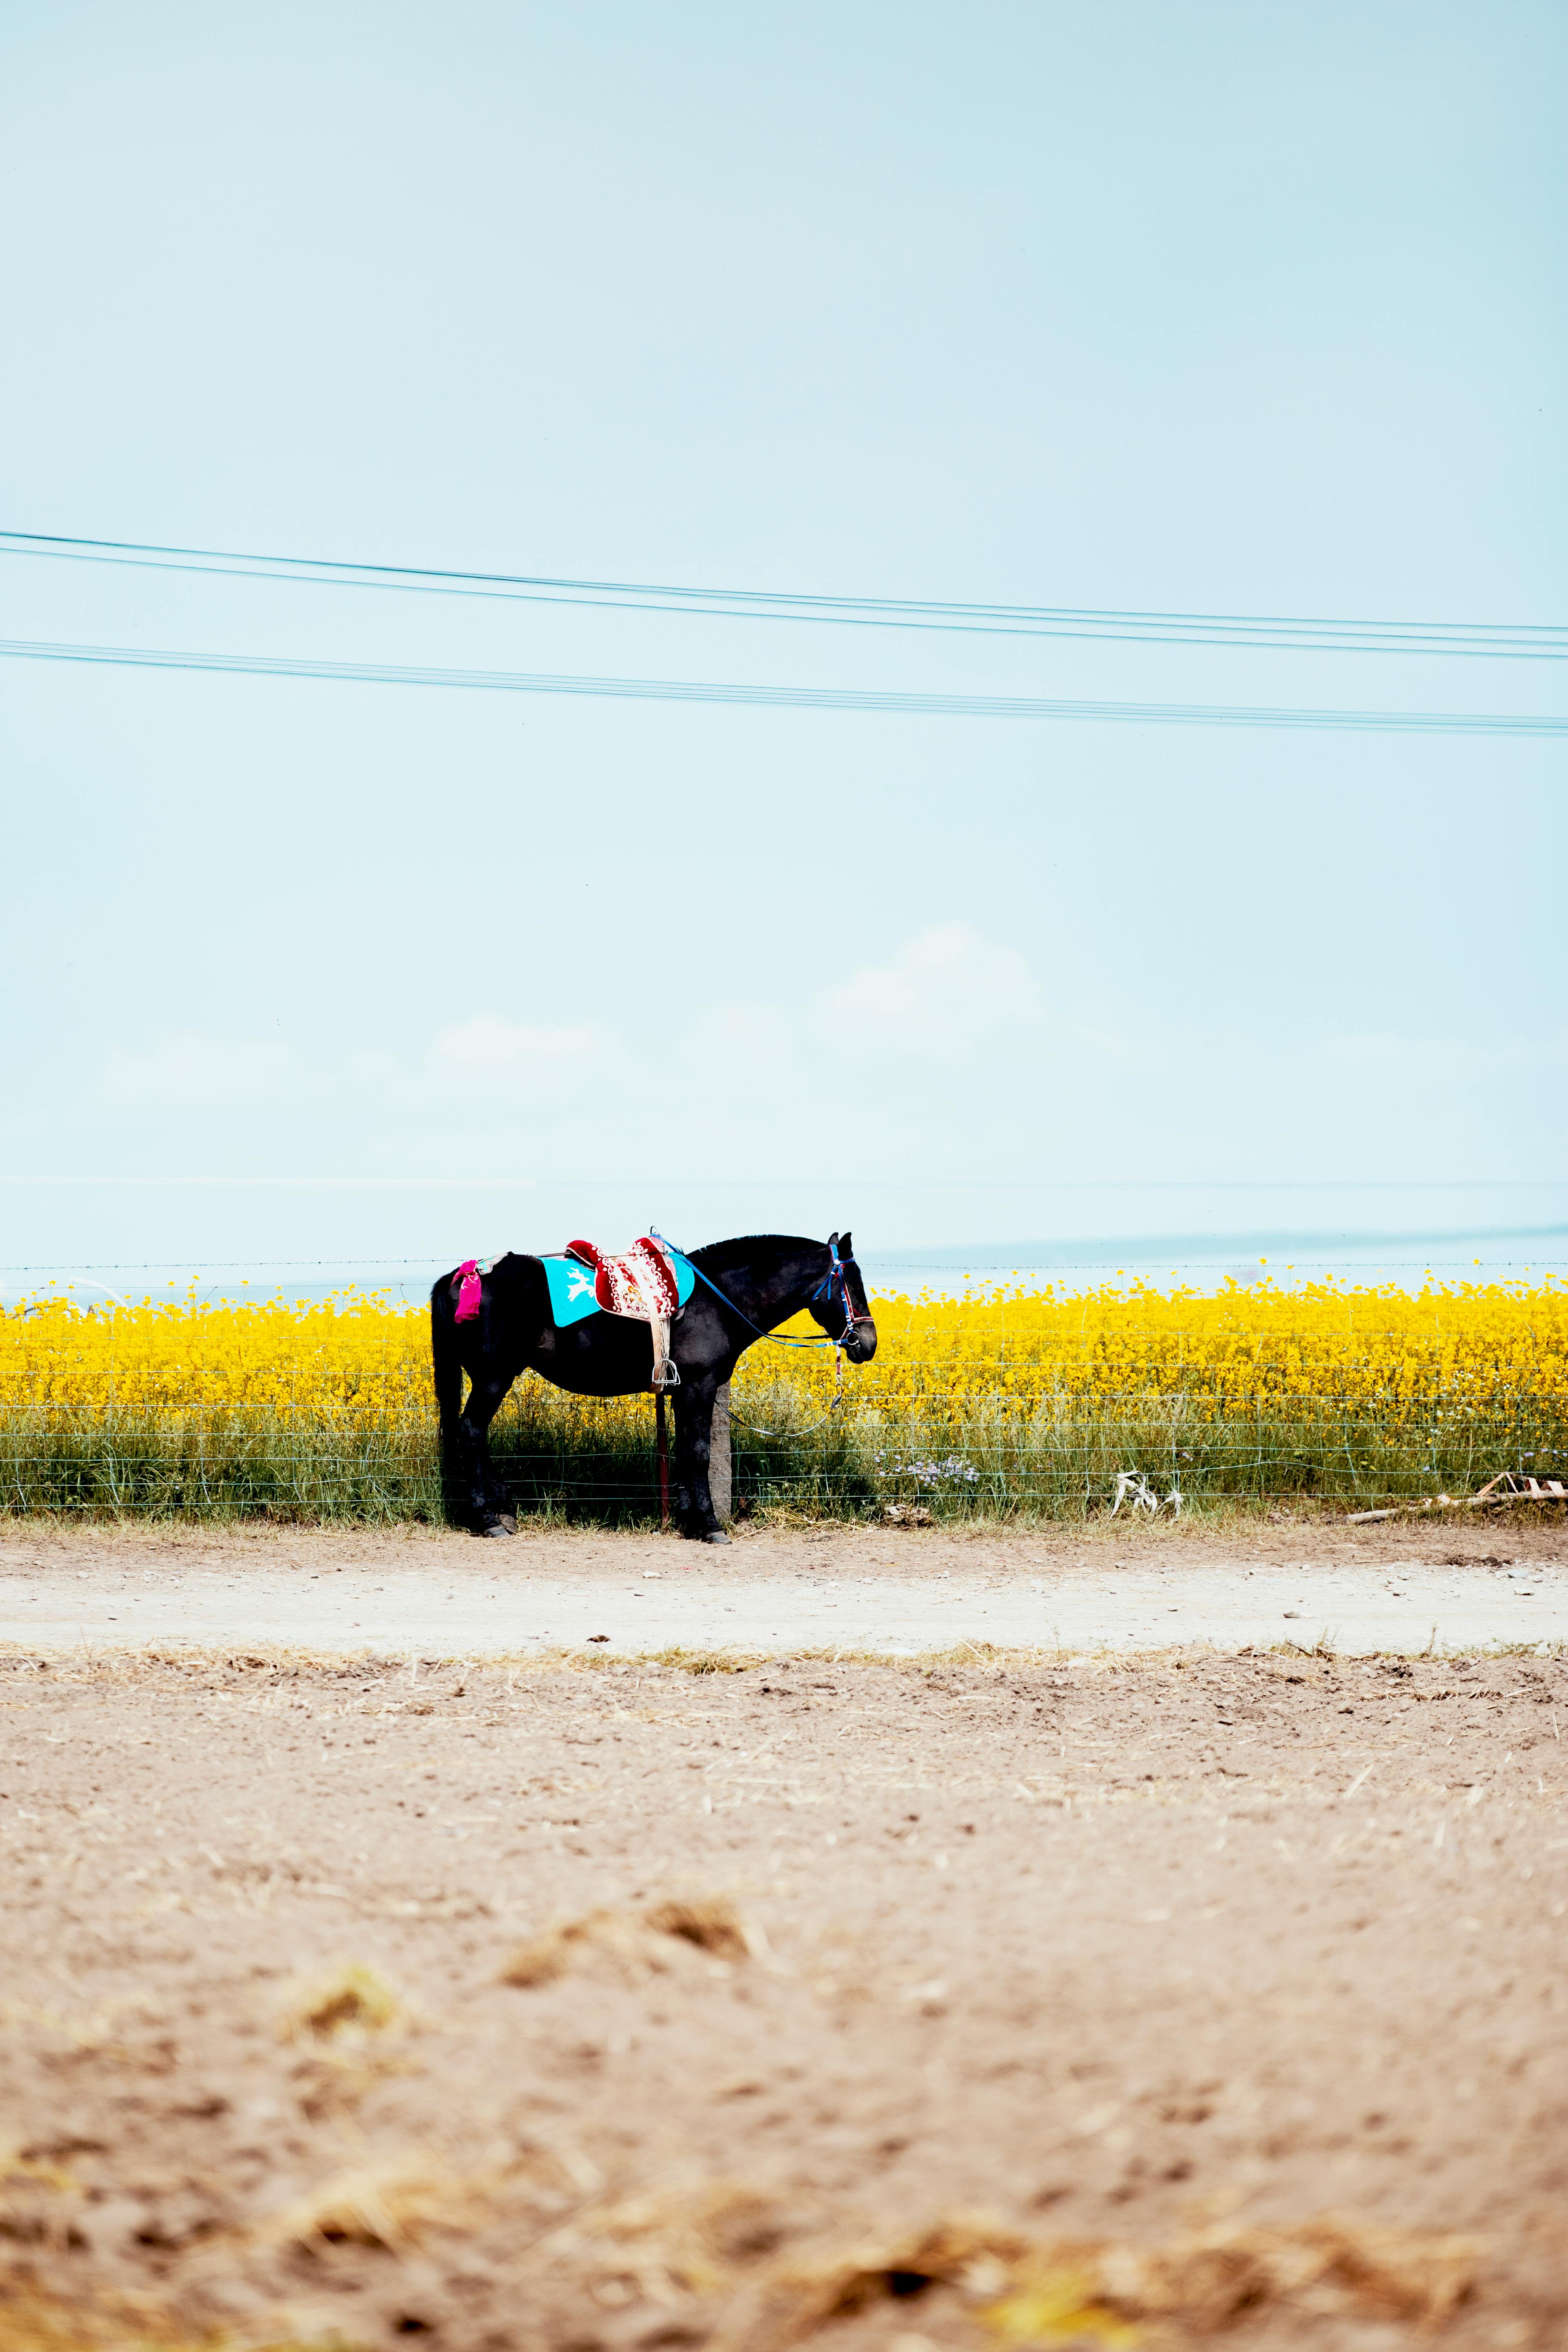  Bauernhof Hintergrundbild 3648x5472. Kostenloses Foto zum Thema: außerorts, bauernhof, china, feld, pferd, raps, säugetier, tier, vieh, weide